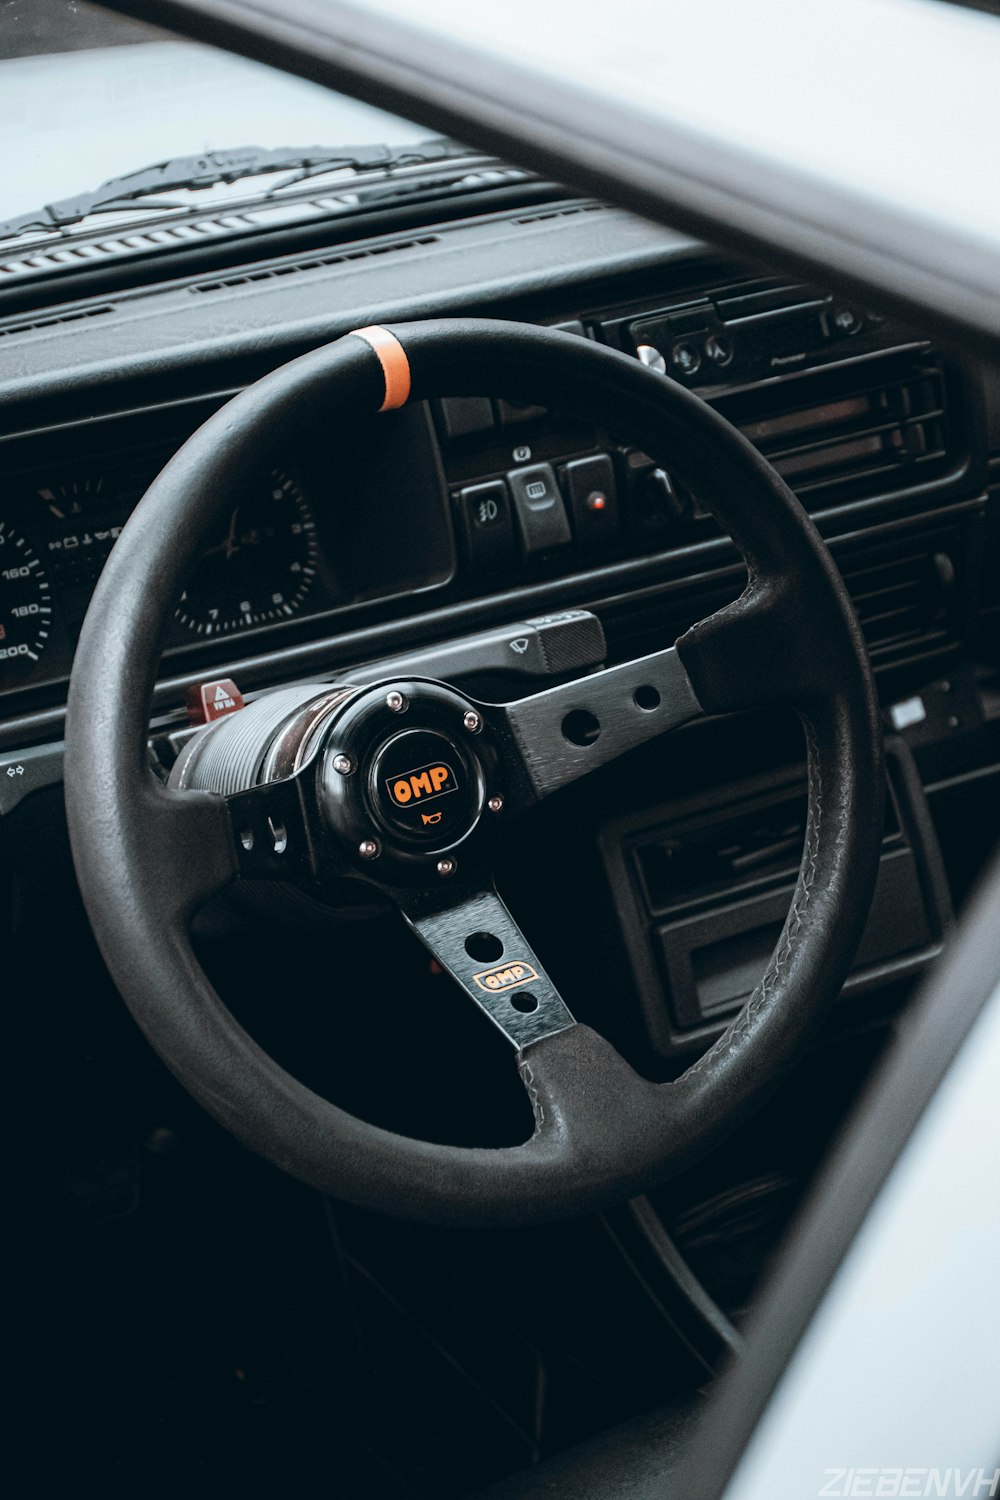 black and orange steering wheel